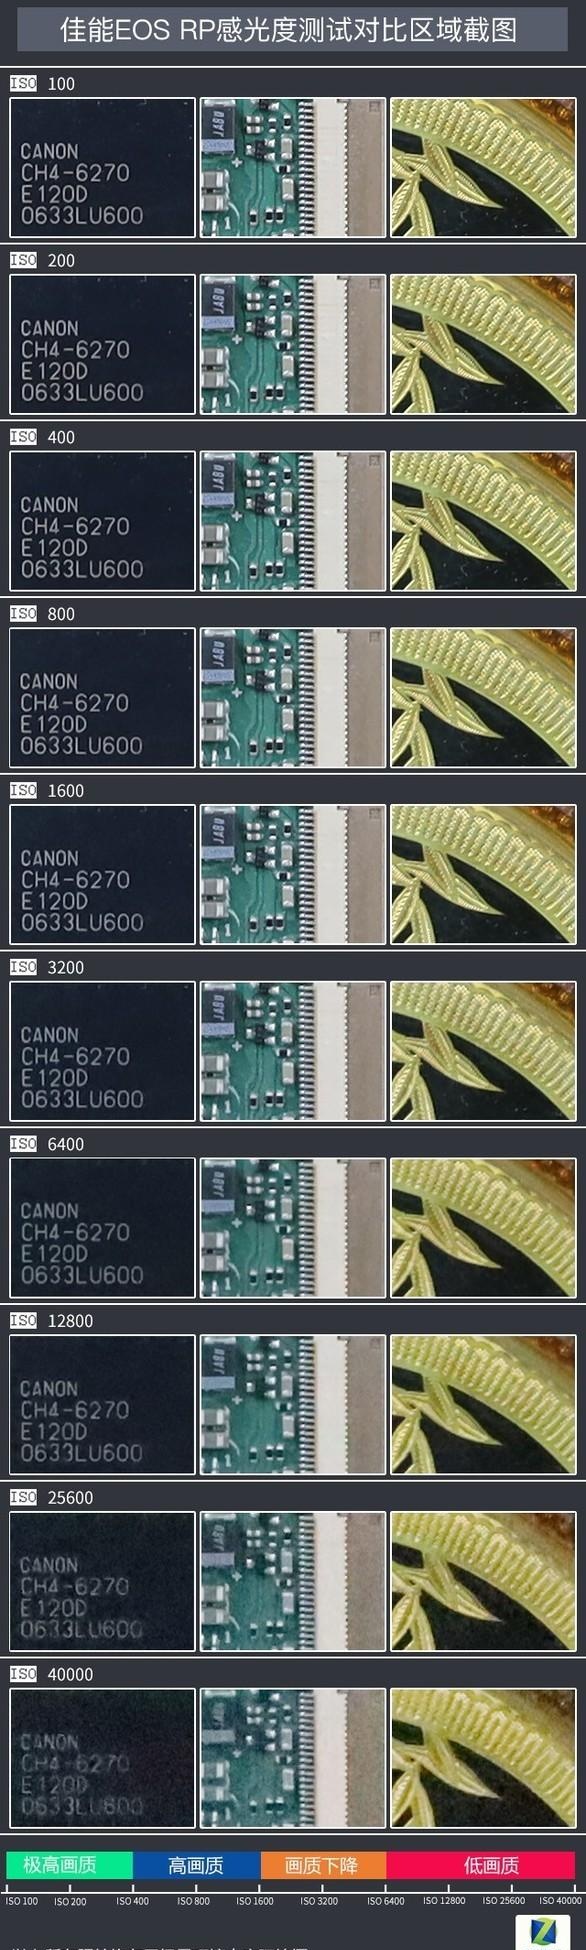 8999圆梦全画幅 佳能EOS RP微单相机评测